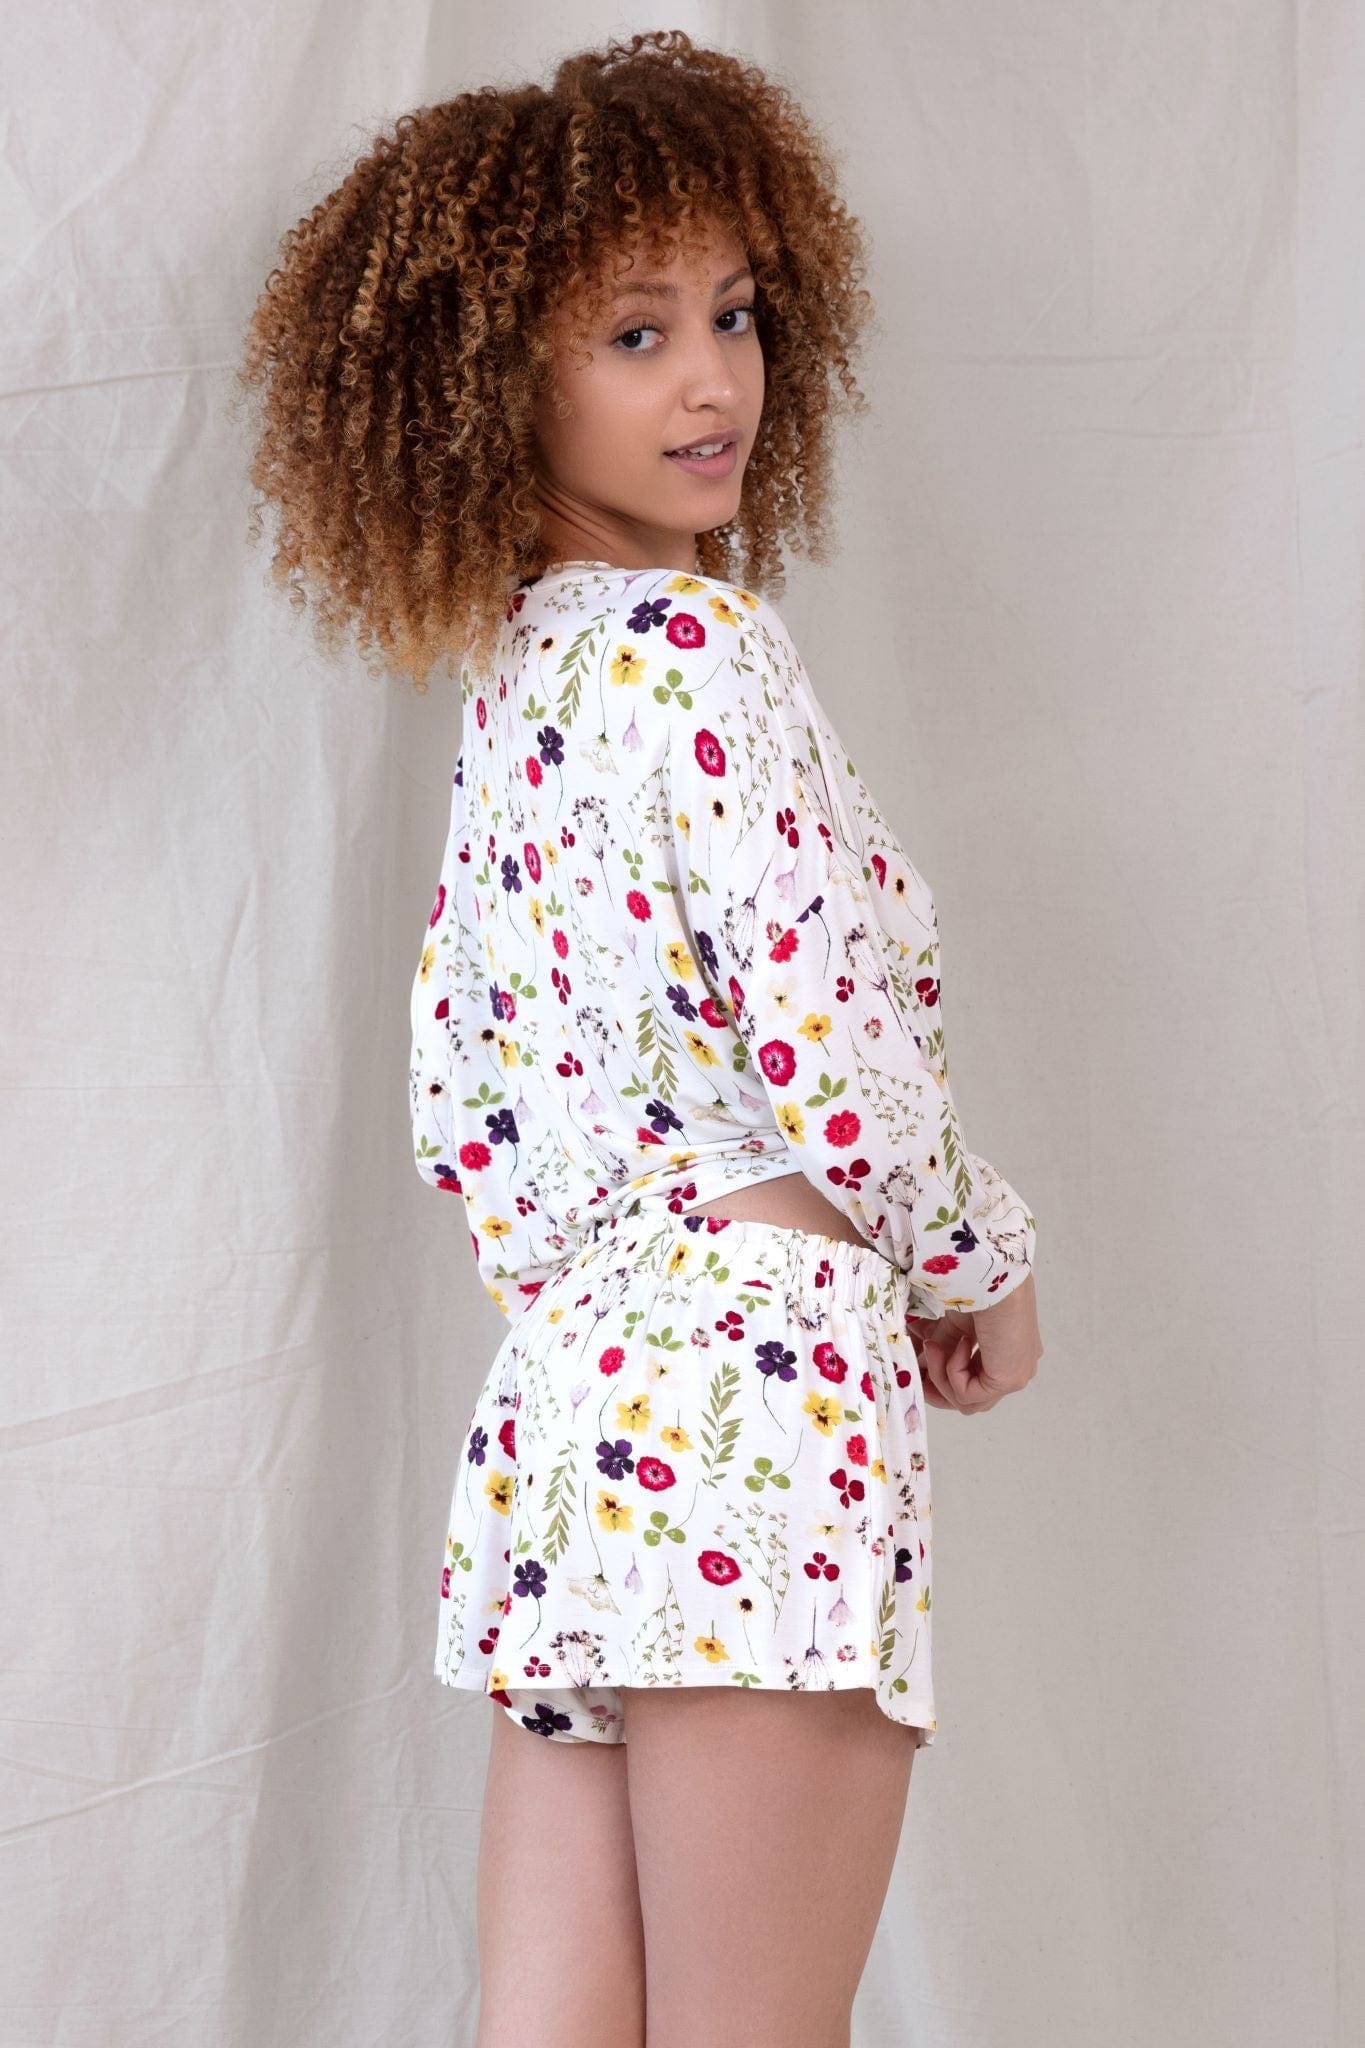 Honeydew Intimates Honeydew Intimates Jersey Pajama Sets - Little Miss Muffin Children & Home